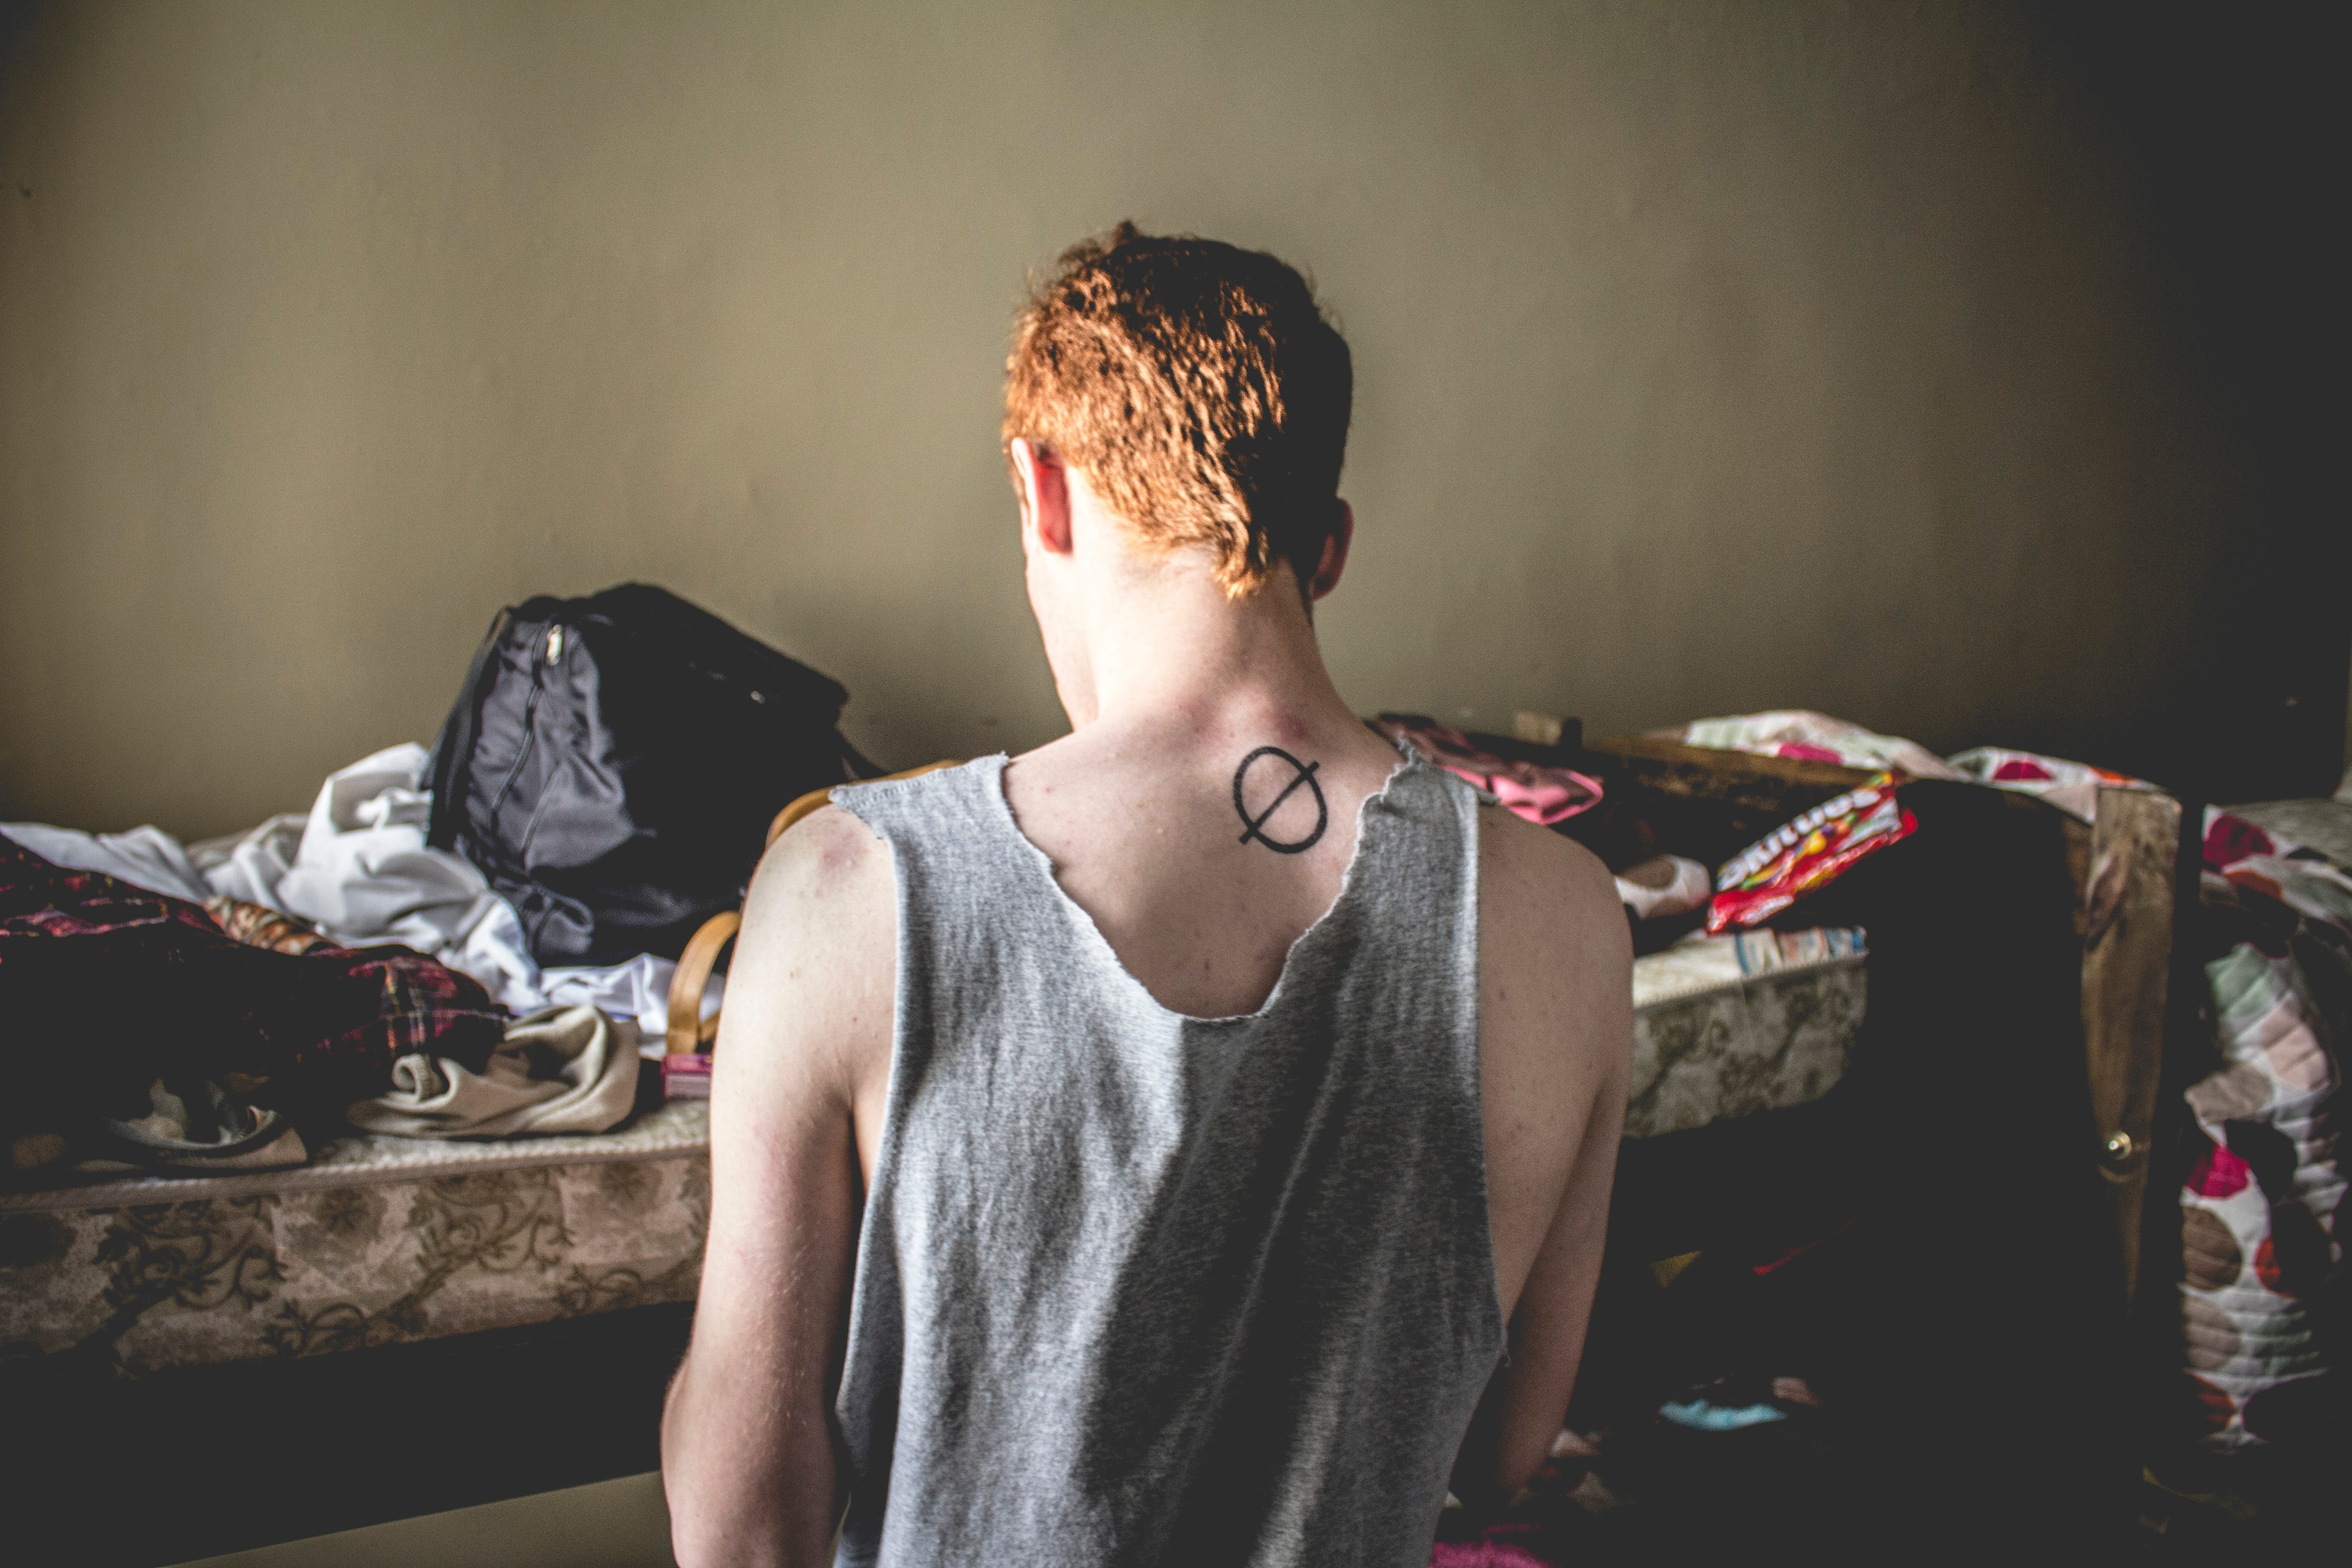 Red-haired man kneeling in cluttered bedroom; image by Greta Schölderle Møller, via unsplash.com.